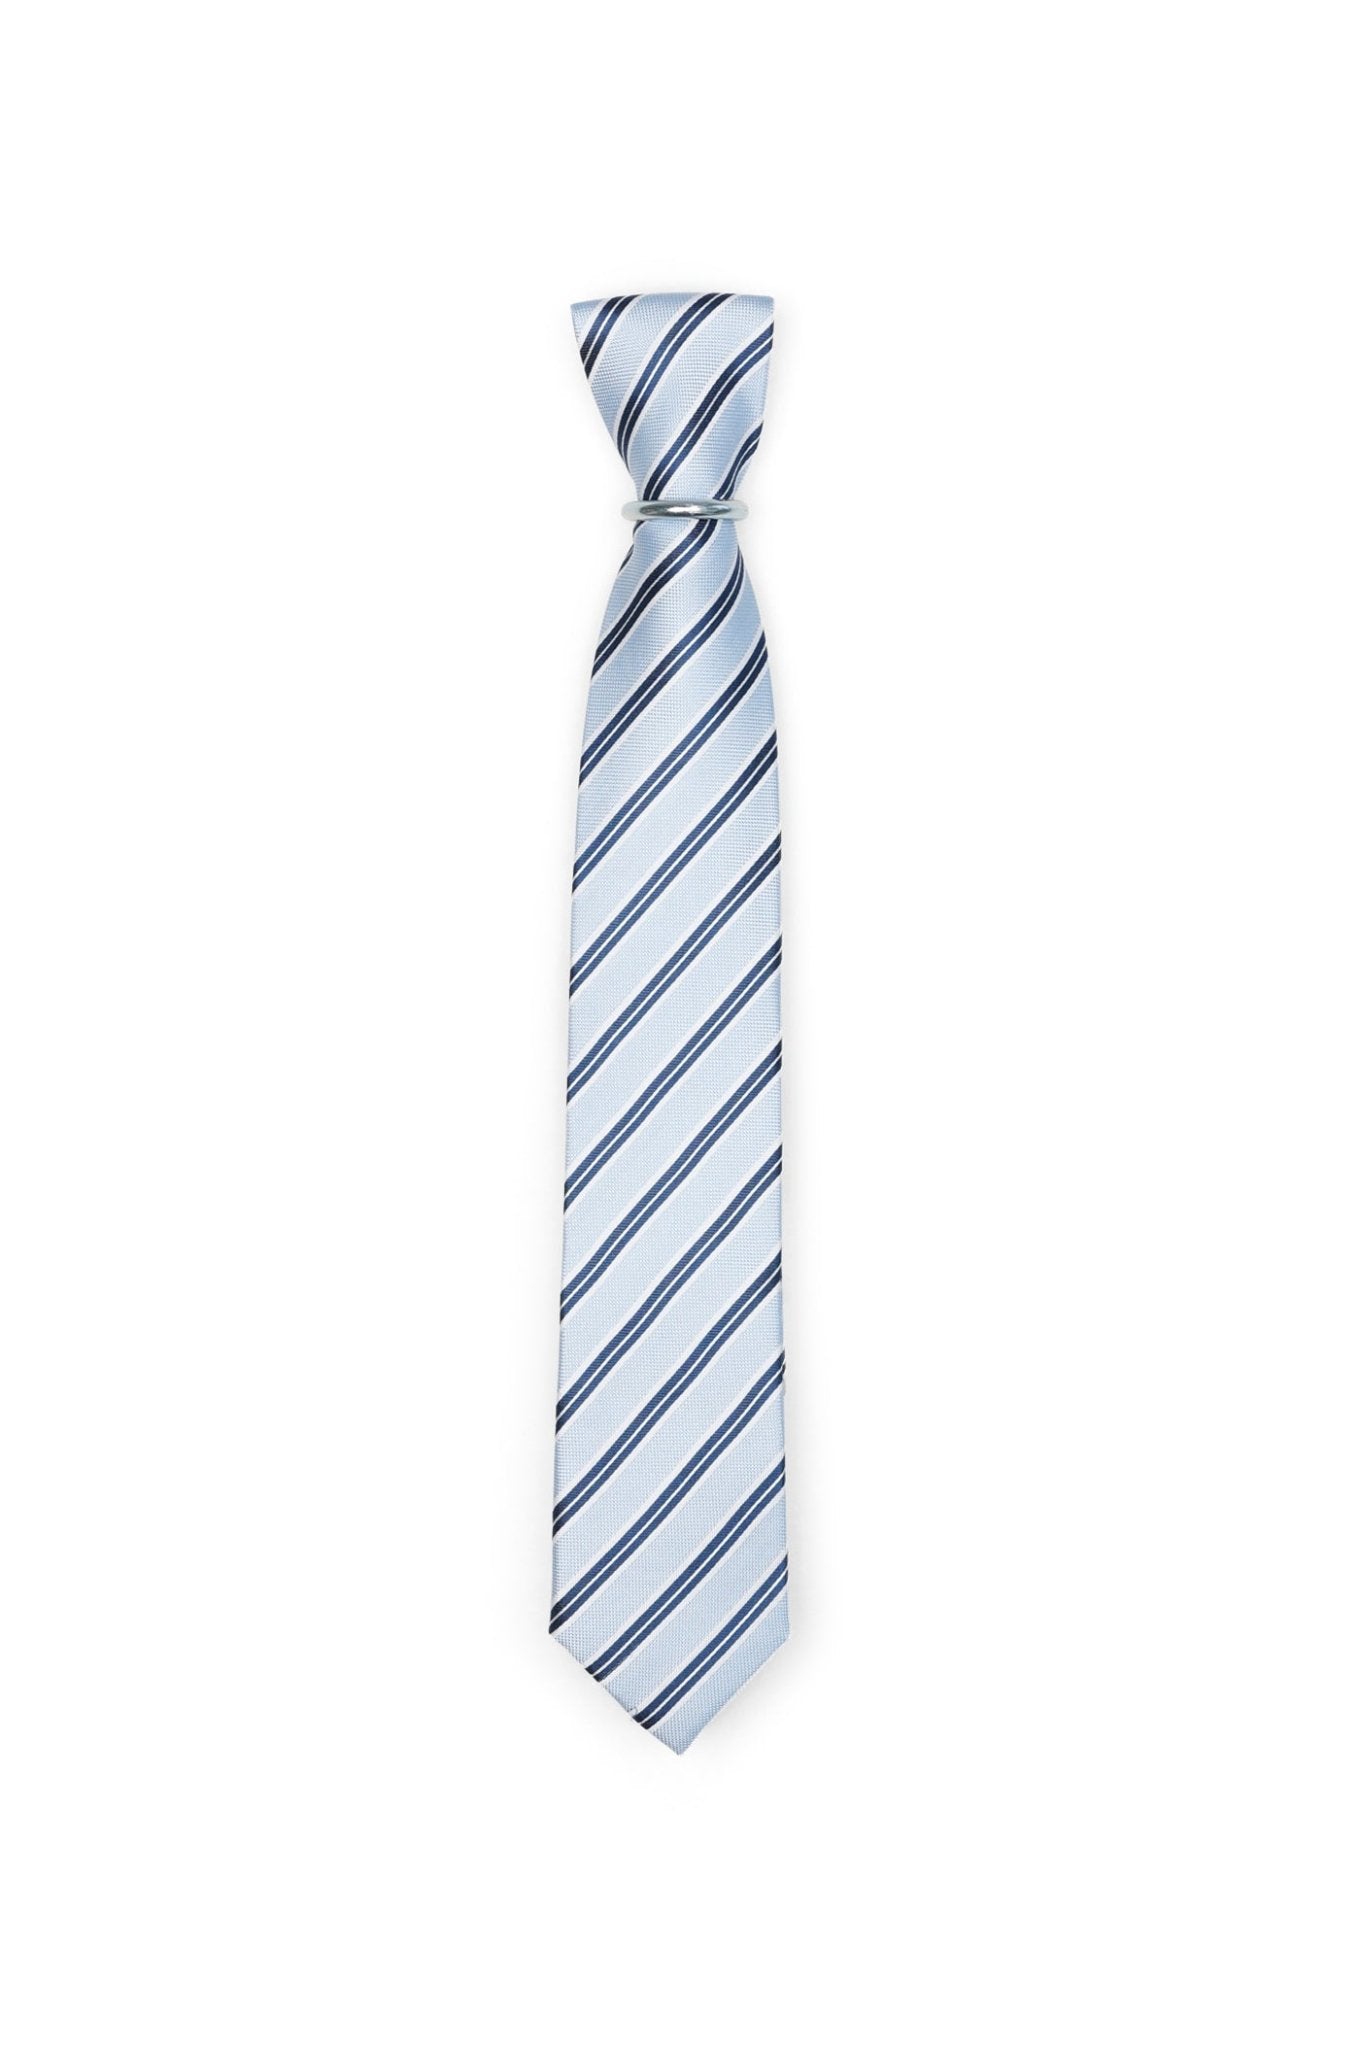 Krawatte mit Streifen - Grün - REAL GUYS